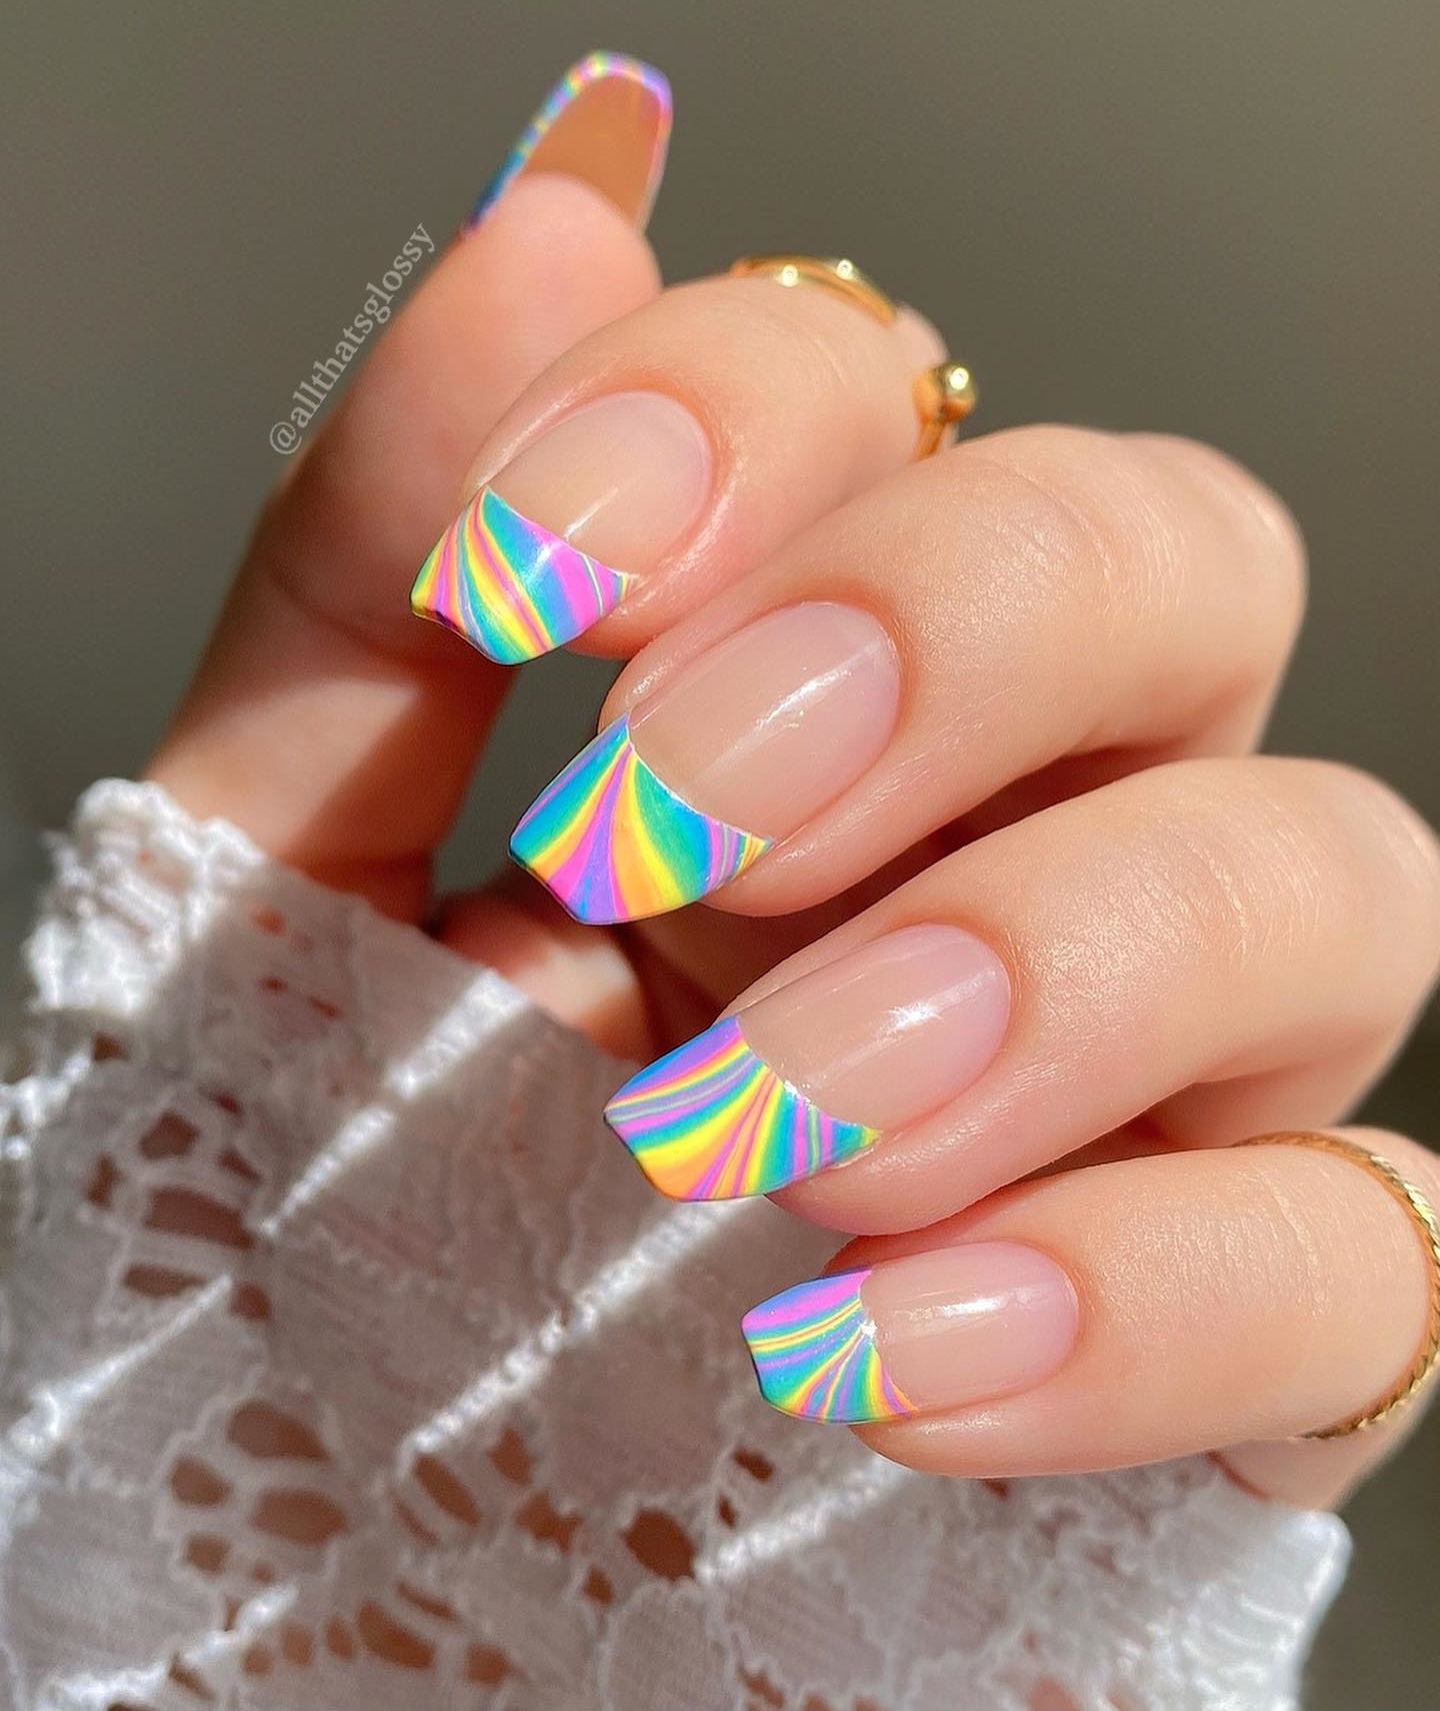 Lange nagels met regenboogtips